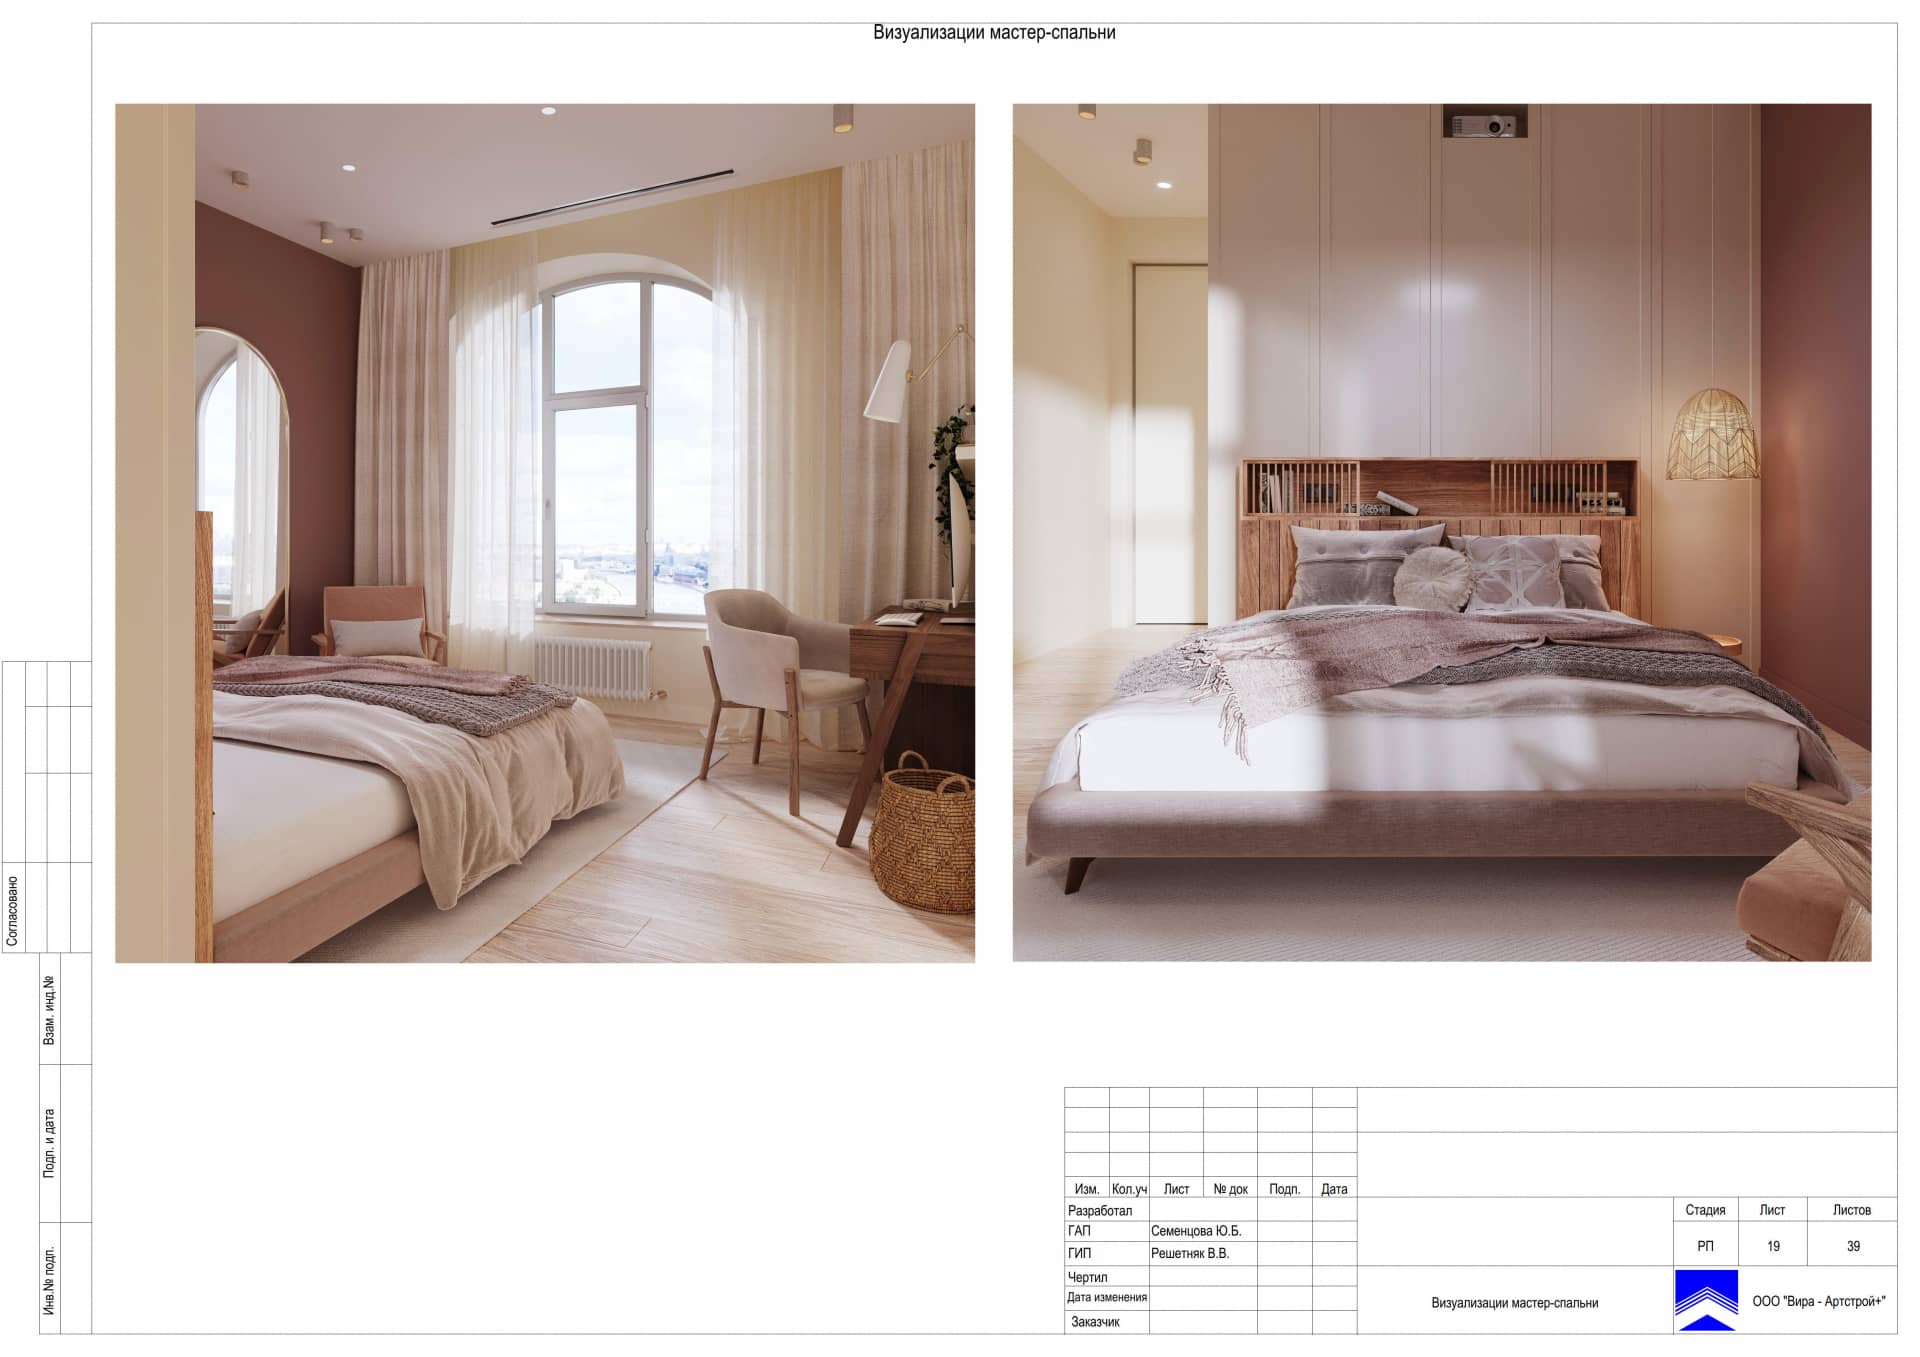 Визуализации мастер-спальни, квартира 106 м² в ЖК «Серебряный Парк»